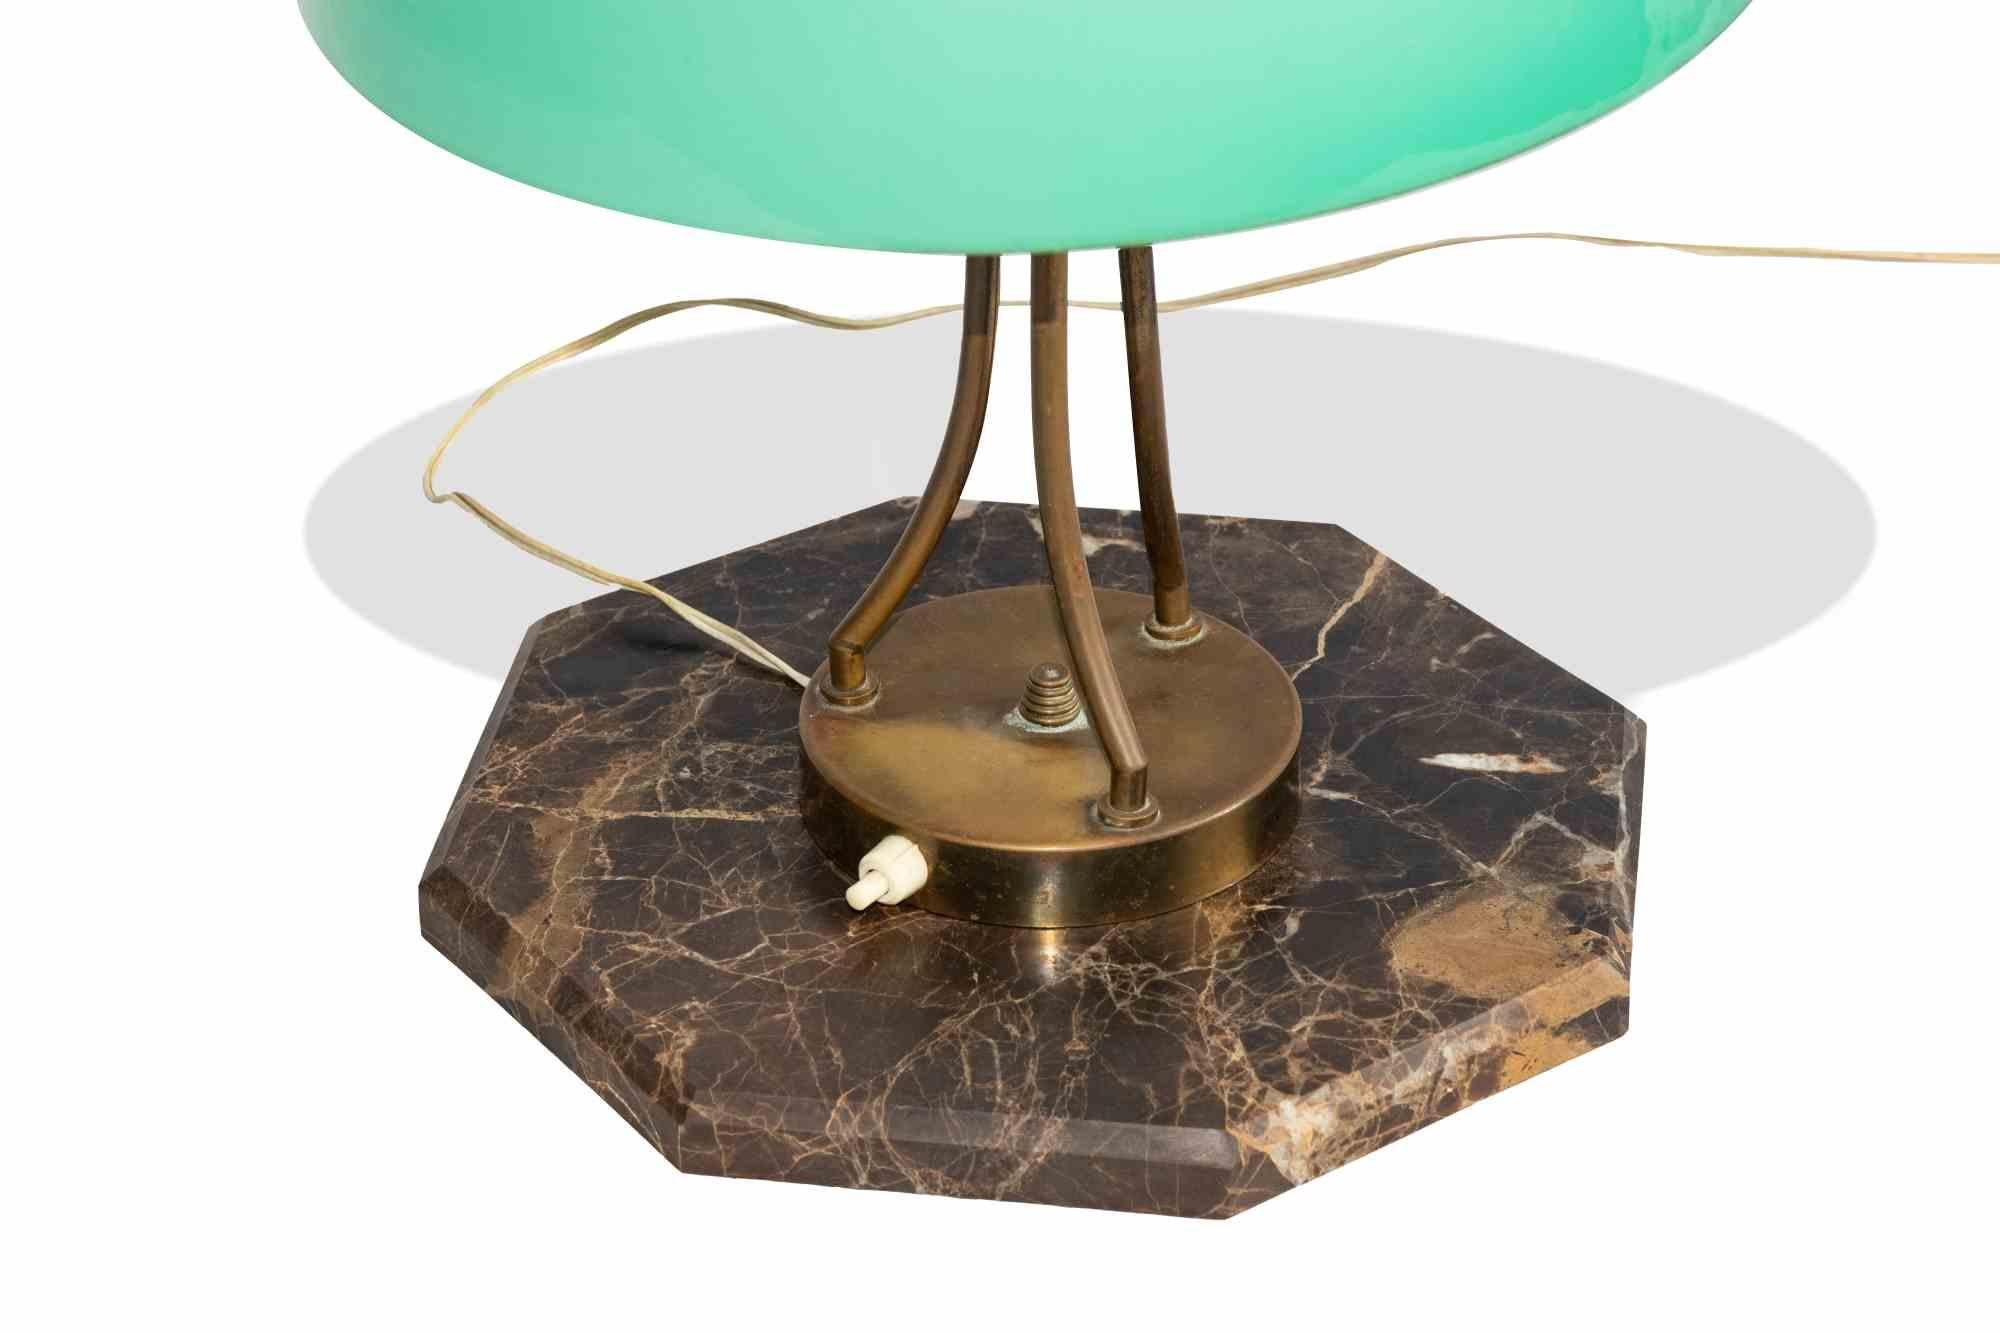 Vintage Table Lamp est un article de lampe de design original réalisé au milieu du 20e siècle.

Cette lampe a une base en marbre précieux et un abat-jour en verre opalin.

Très bon état.
